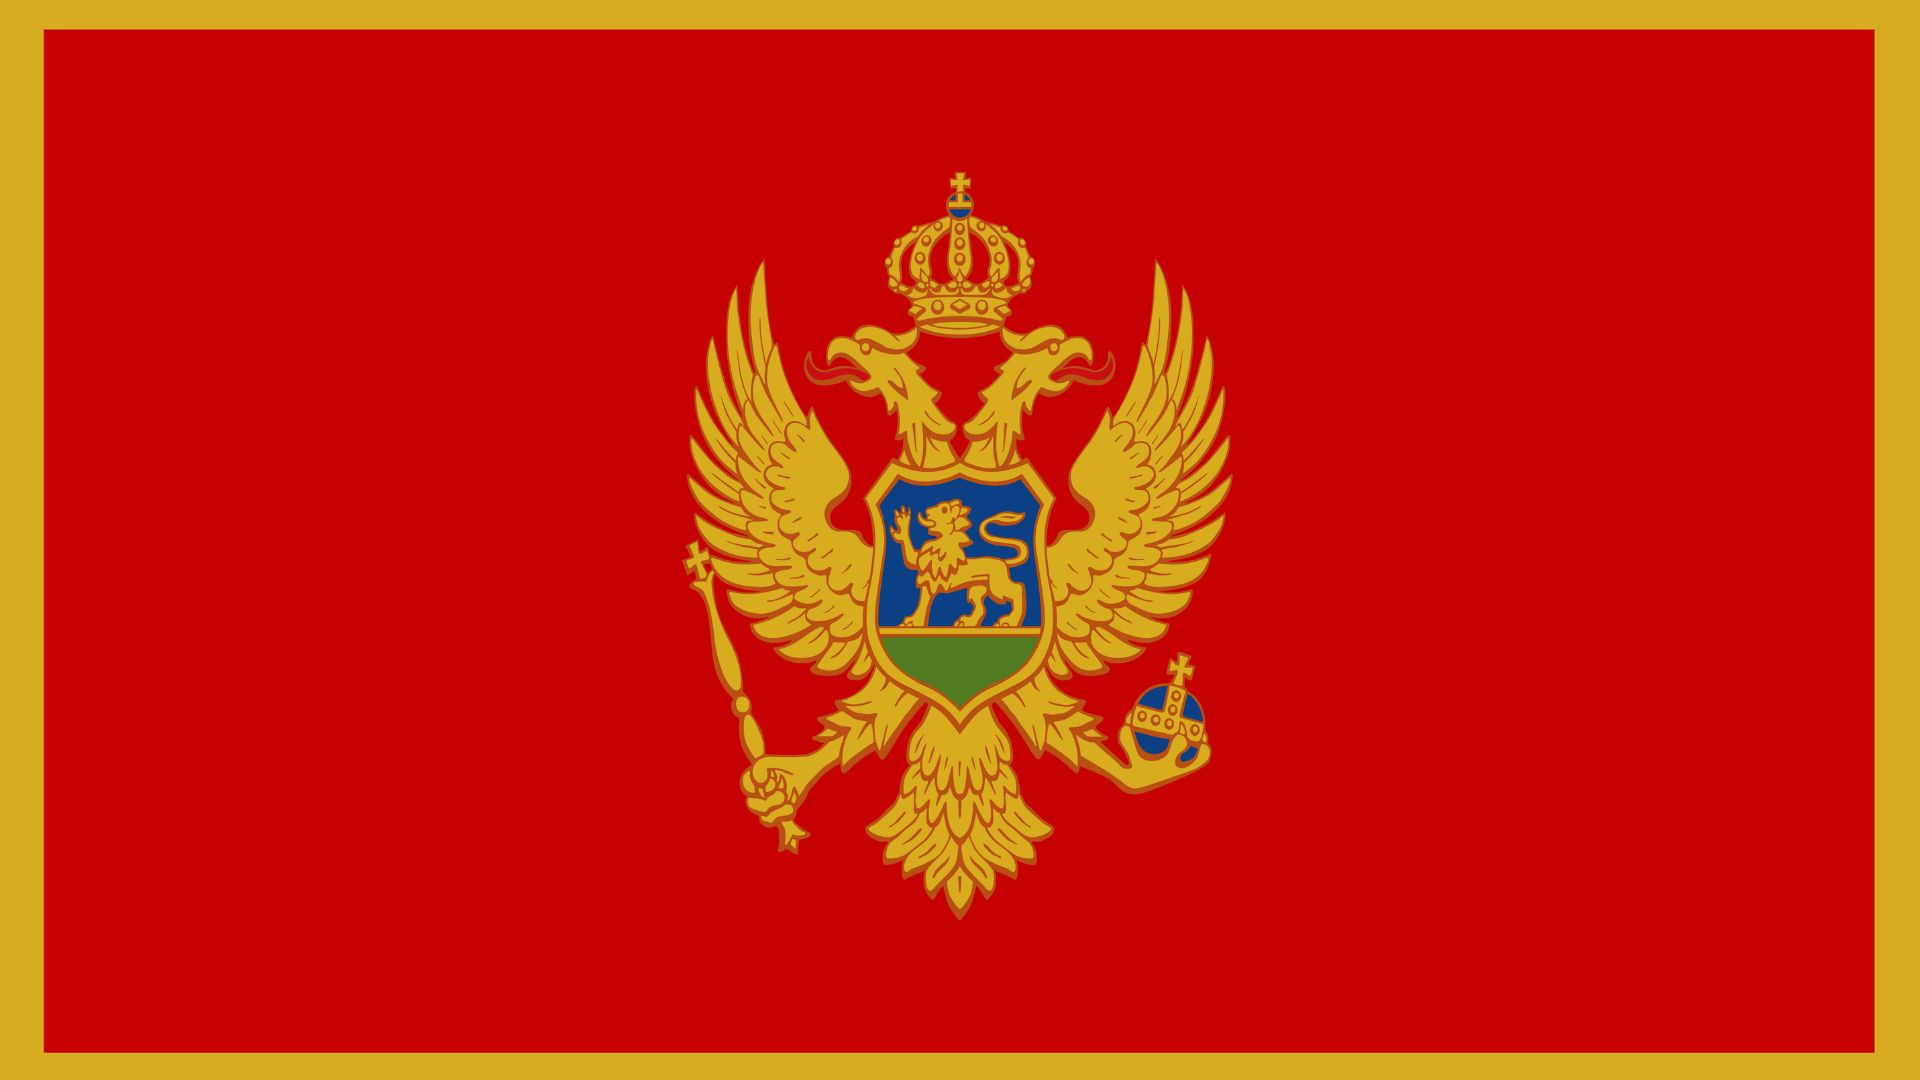 A bandeira do Montenegro aparece descrita é vermelha e traz uma figura na sua parte central, que é o escudo do Montenegro, adaptado em 1993.